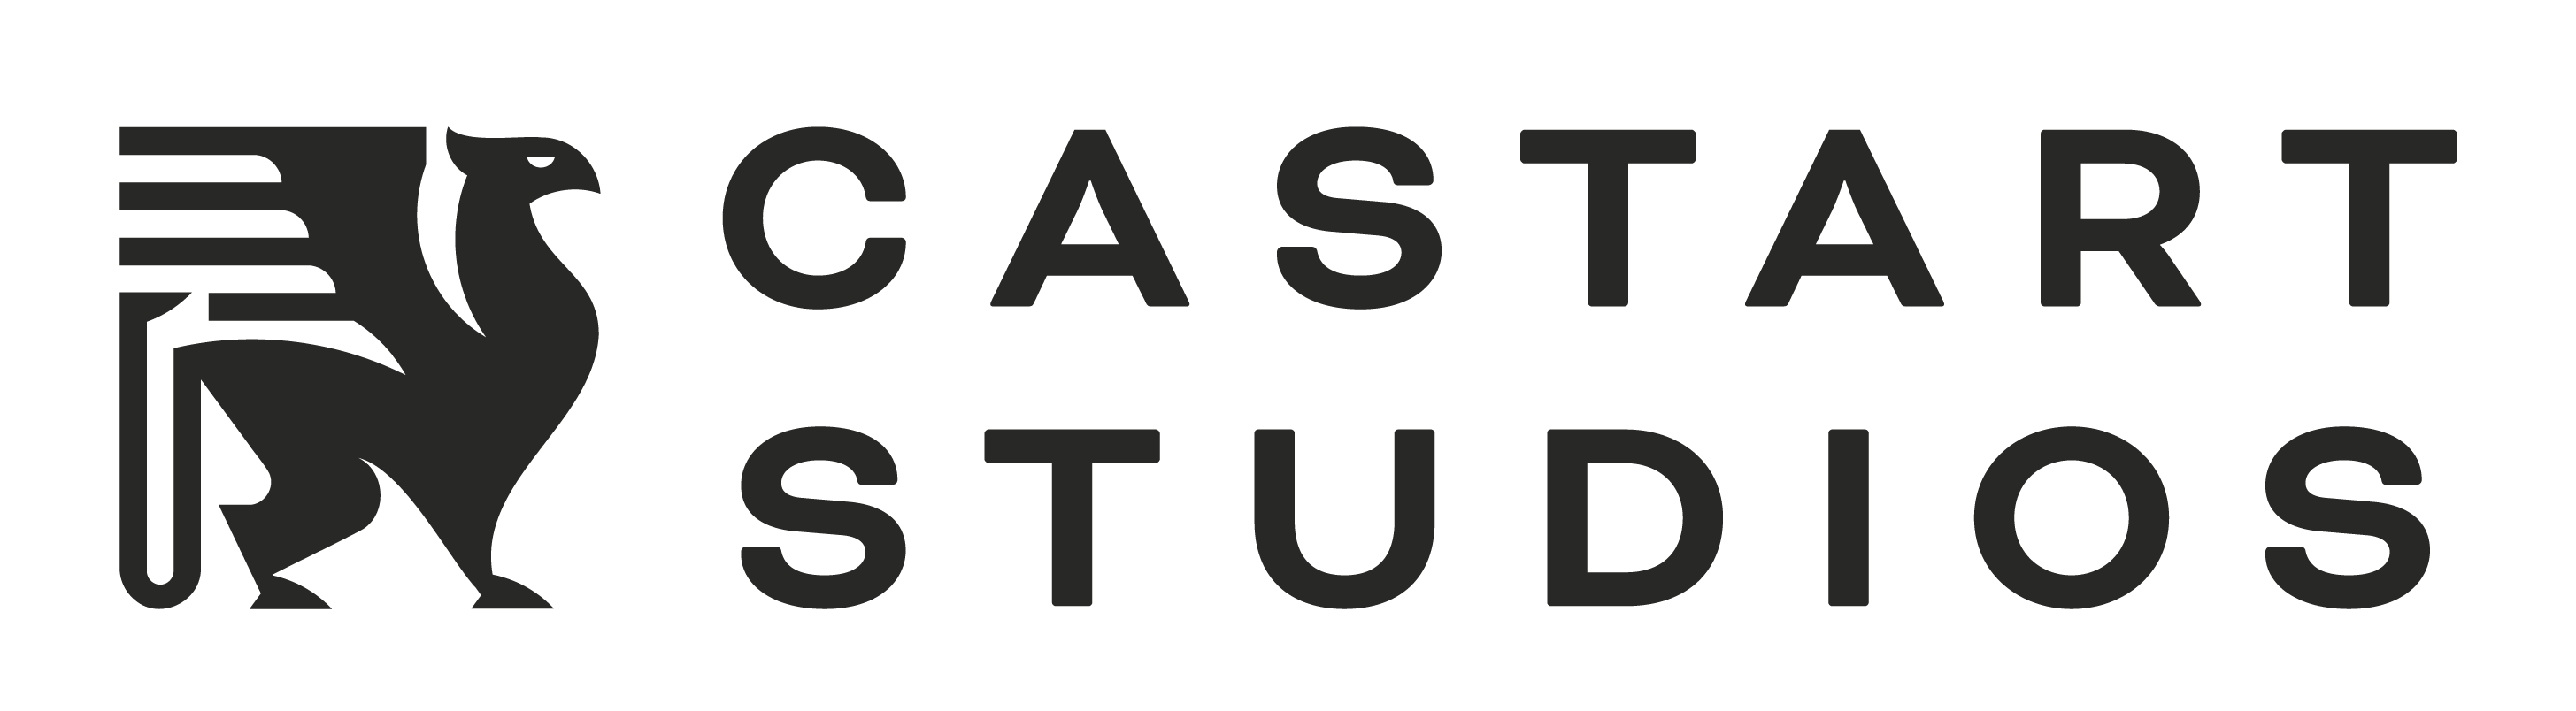 Castart Studios 